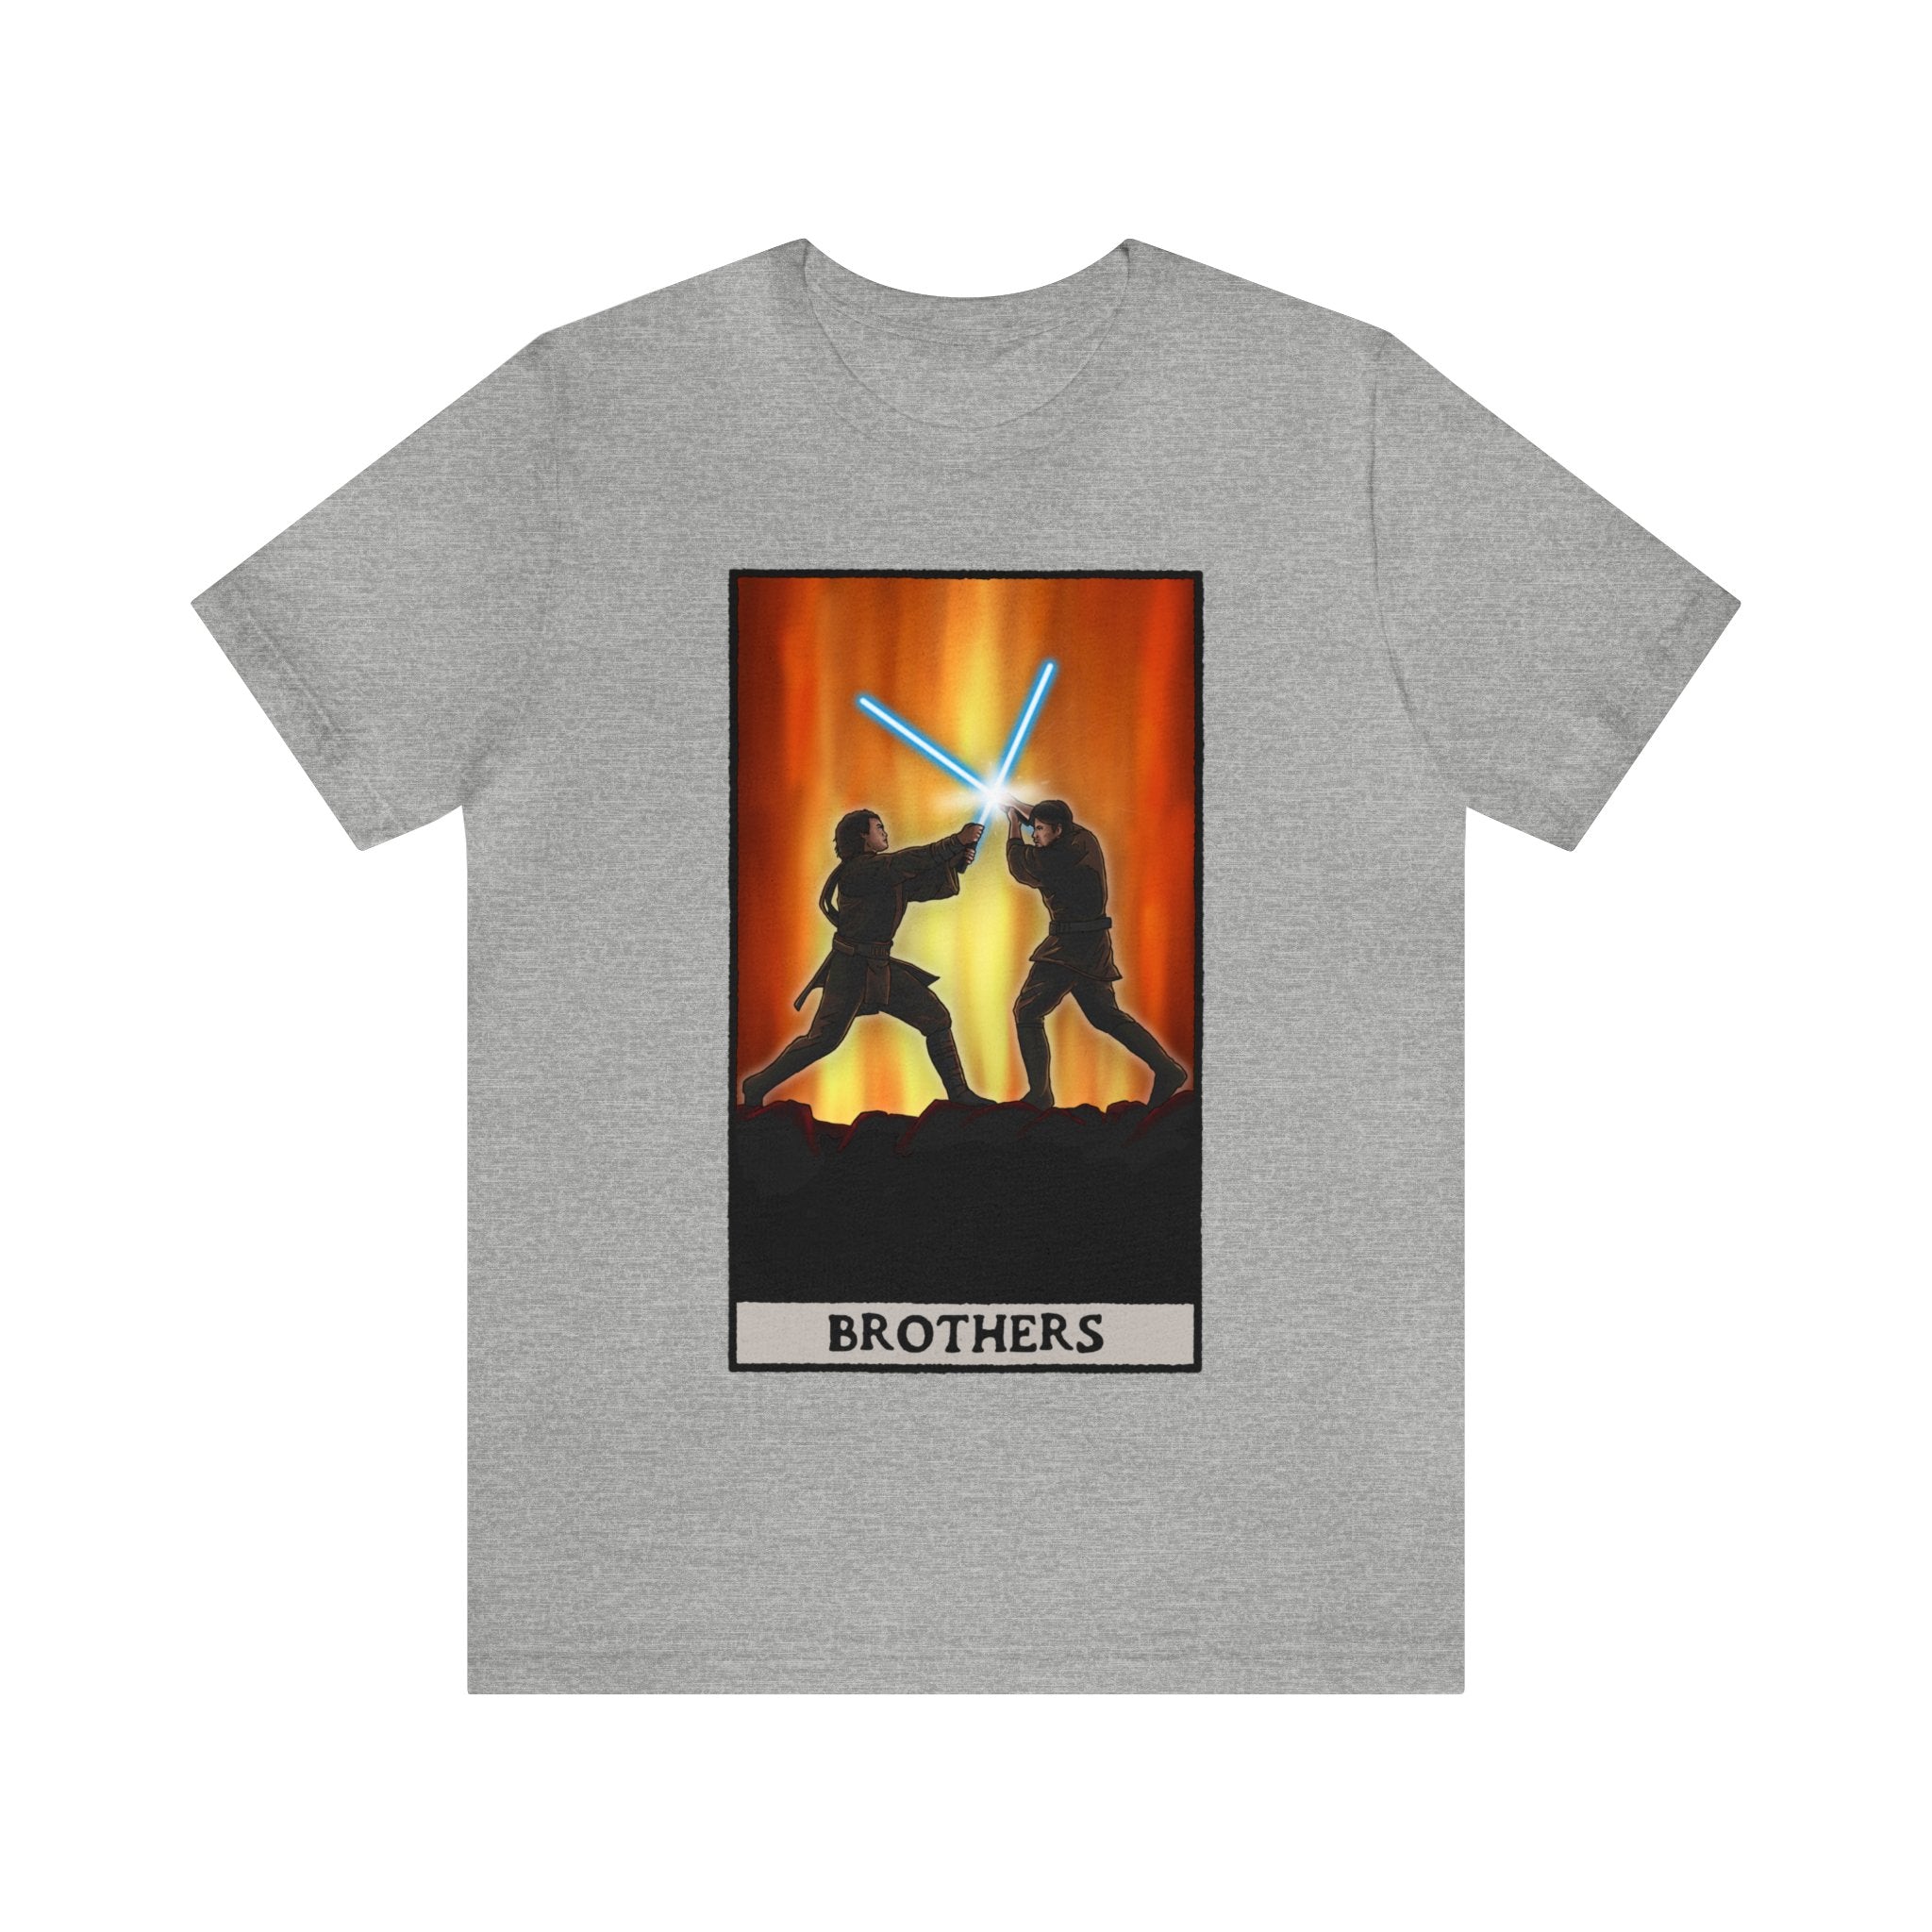 Anakin & Obi-Wan "Brothers" Tarot Card (T-shirt)